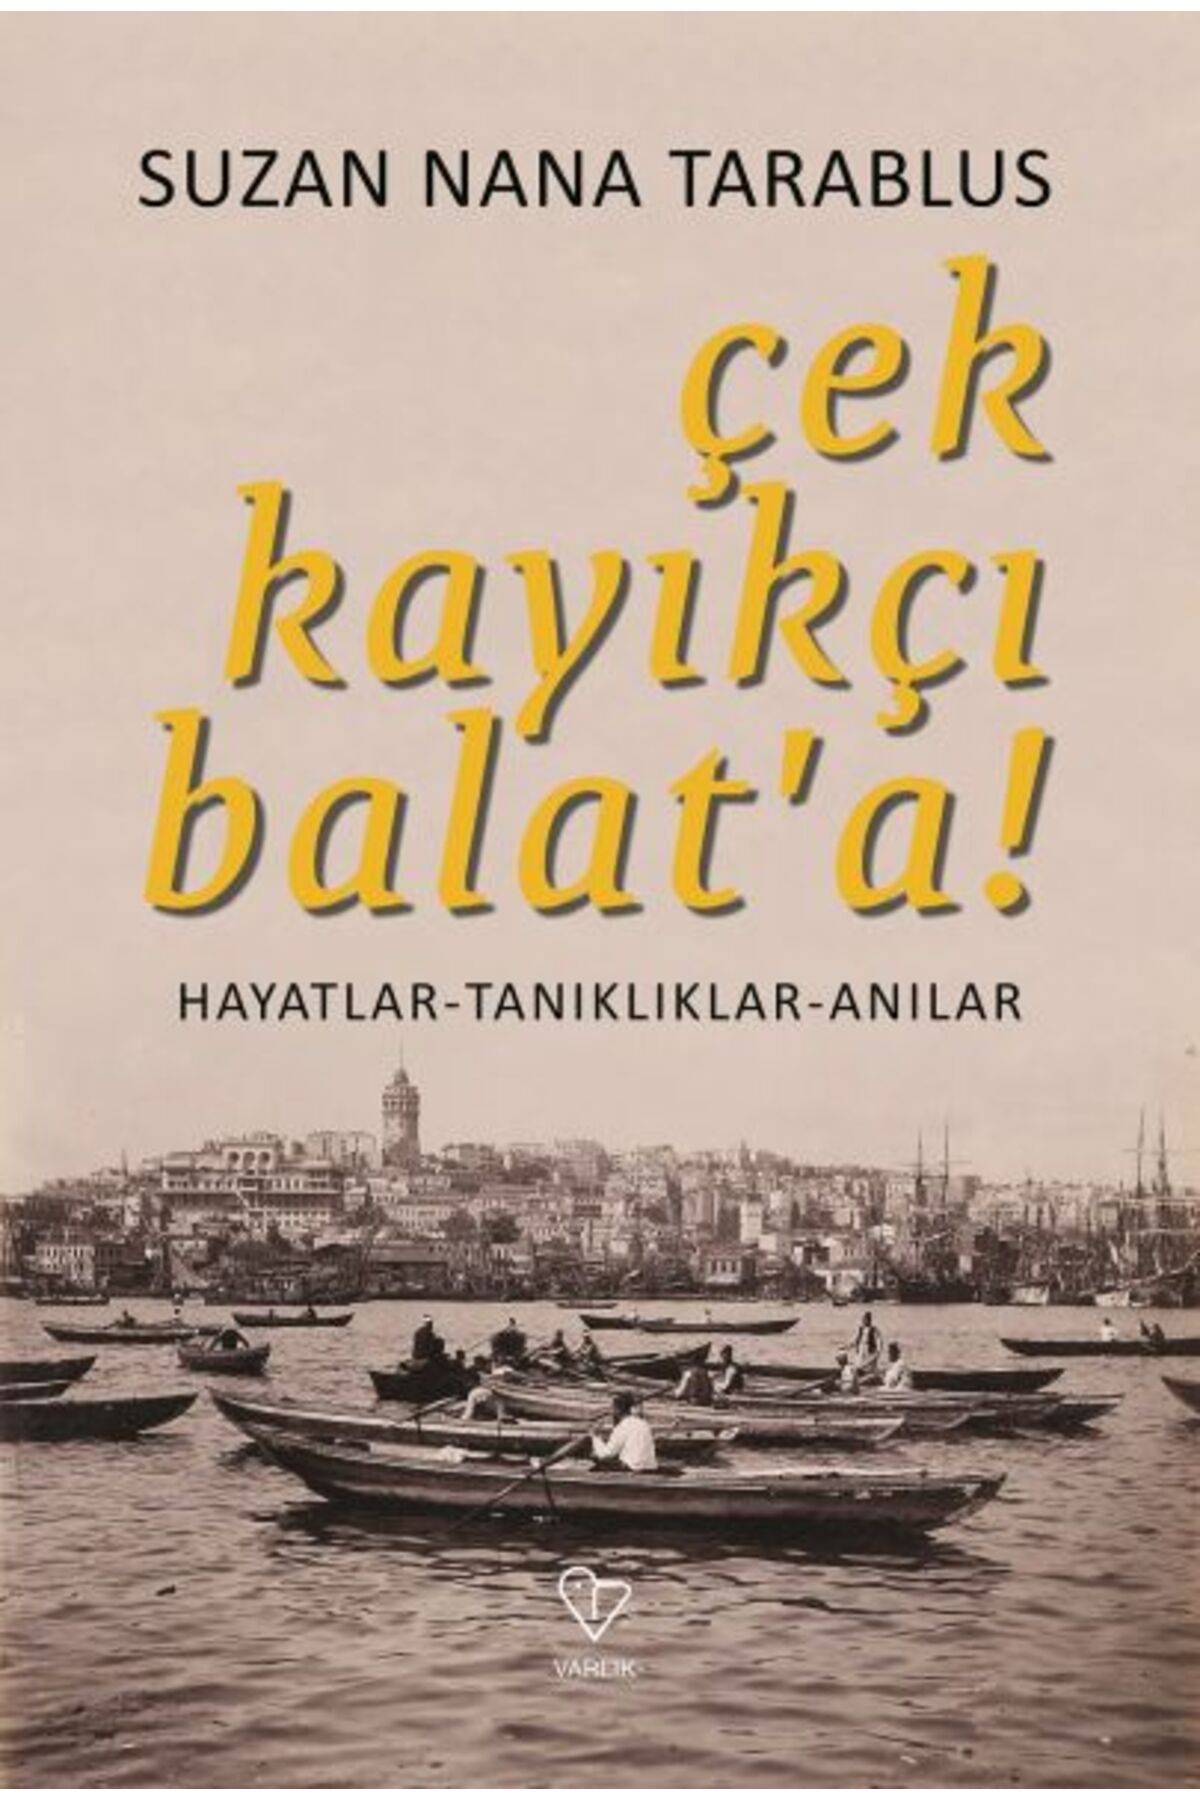 Varlık Yayınları Çek Kayıkçı Balat'a - Hayatlar-Tanıklıklar-Anılar